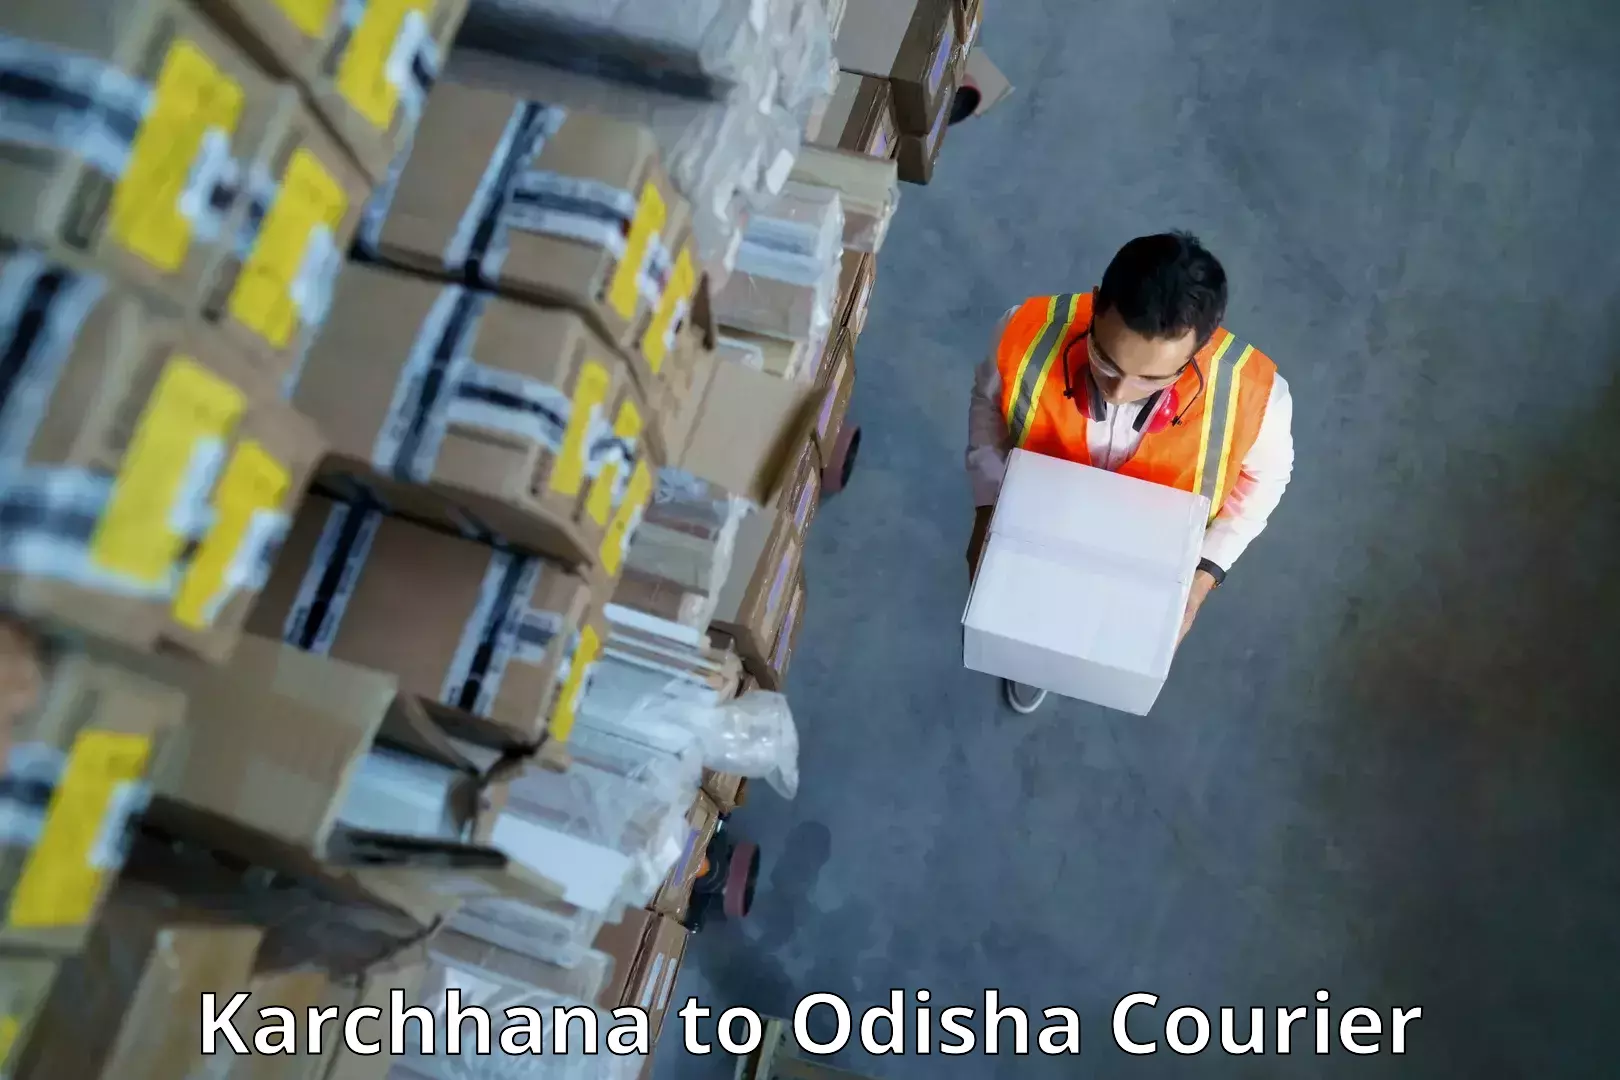 Scalable shipping solutions Karchhana to Kuchinda